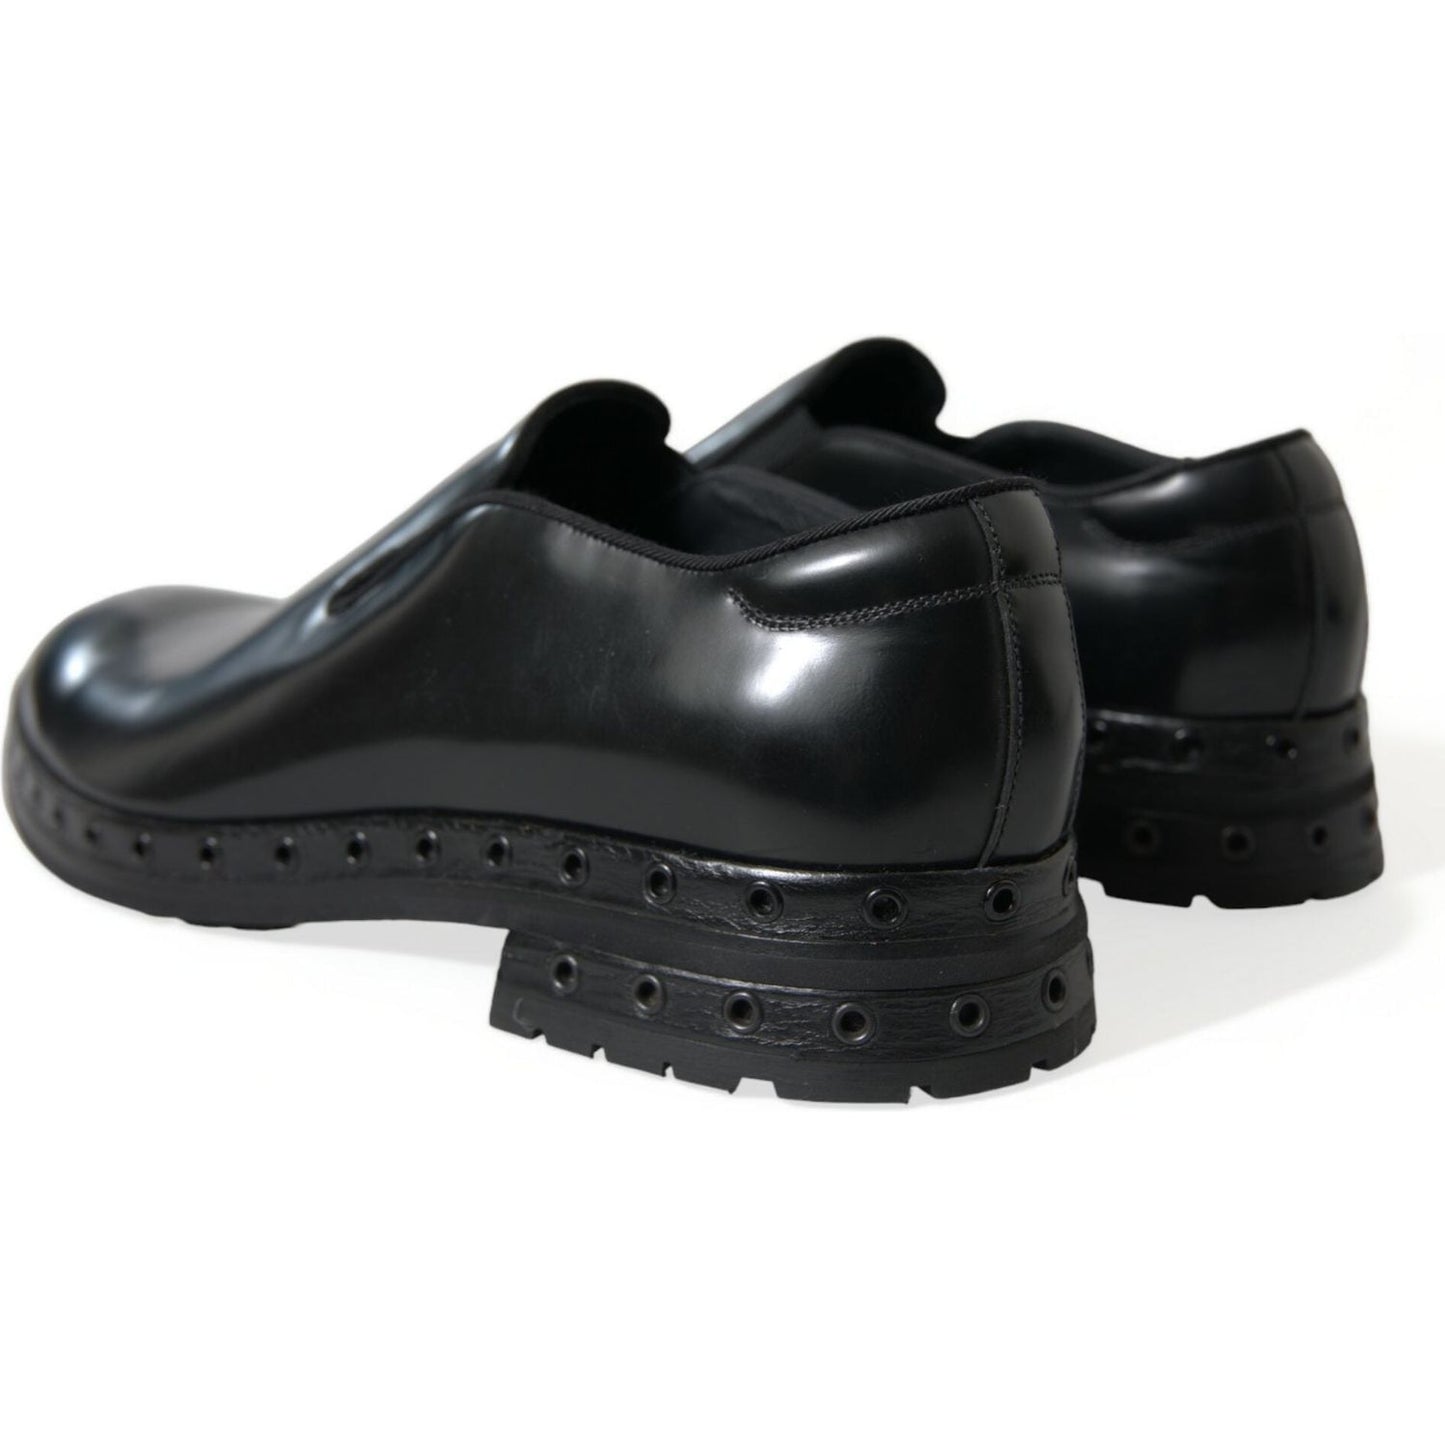 Dolce & Gabbana | Elegant Black Leather Studded Loafers| McRichard Designer Brands   